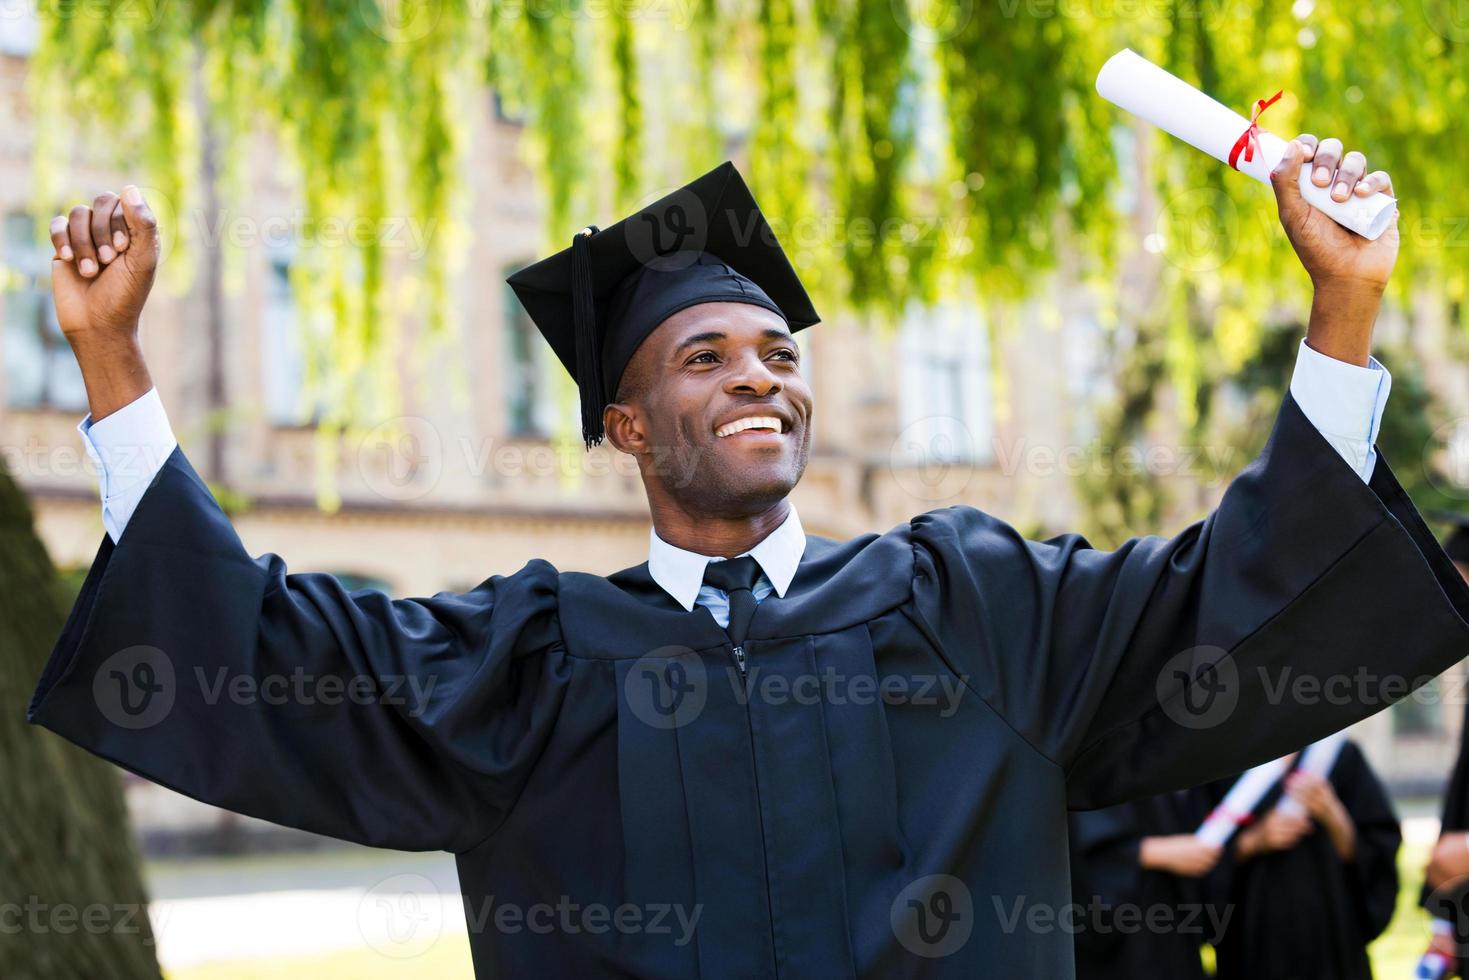 Ich habe endlich meinen Abschluss gemacht, ein glücklicher junger afrikanischer Mann in Abschlusskleidern, der sein Diplom in der Hand hält und die Arme hochhebt, während seine Freunde im Hintergrund stehen foto